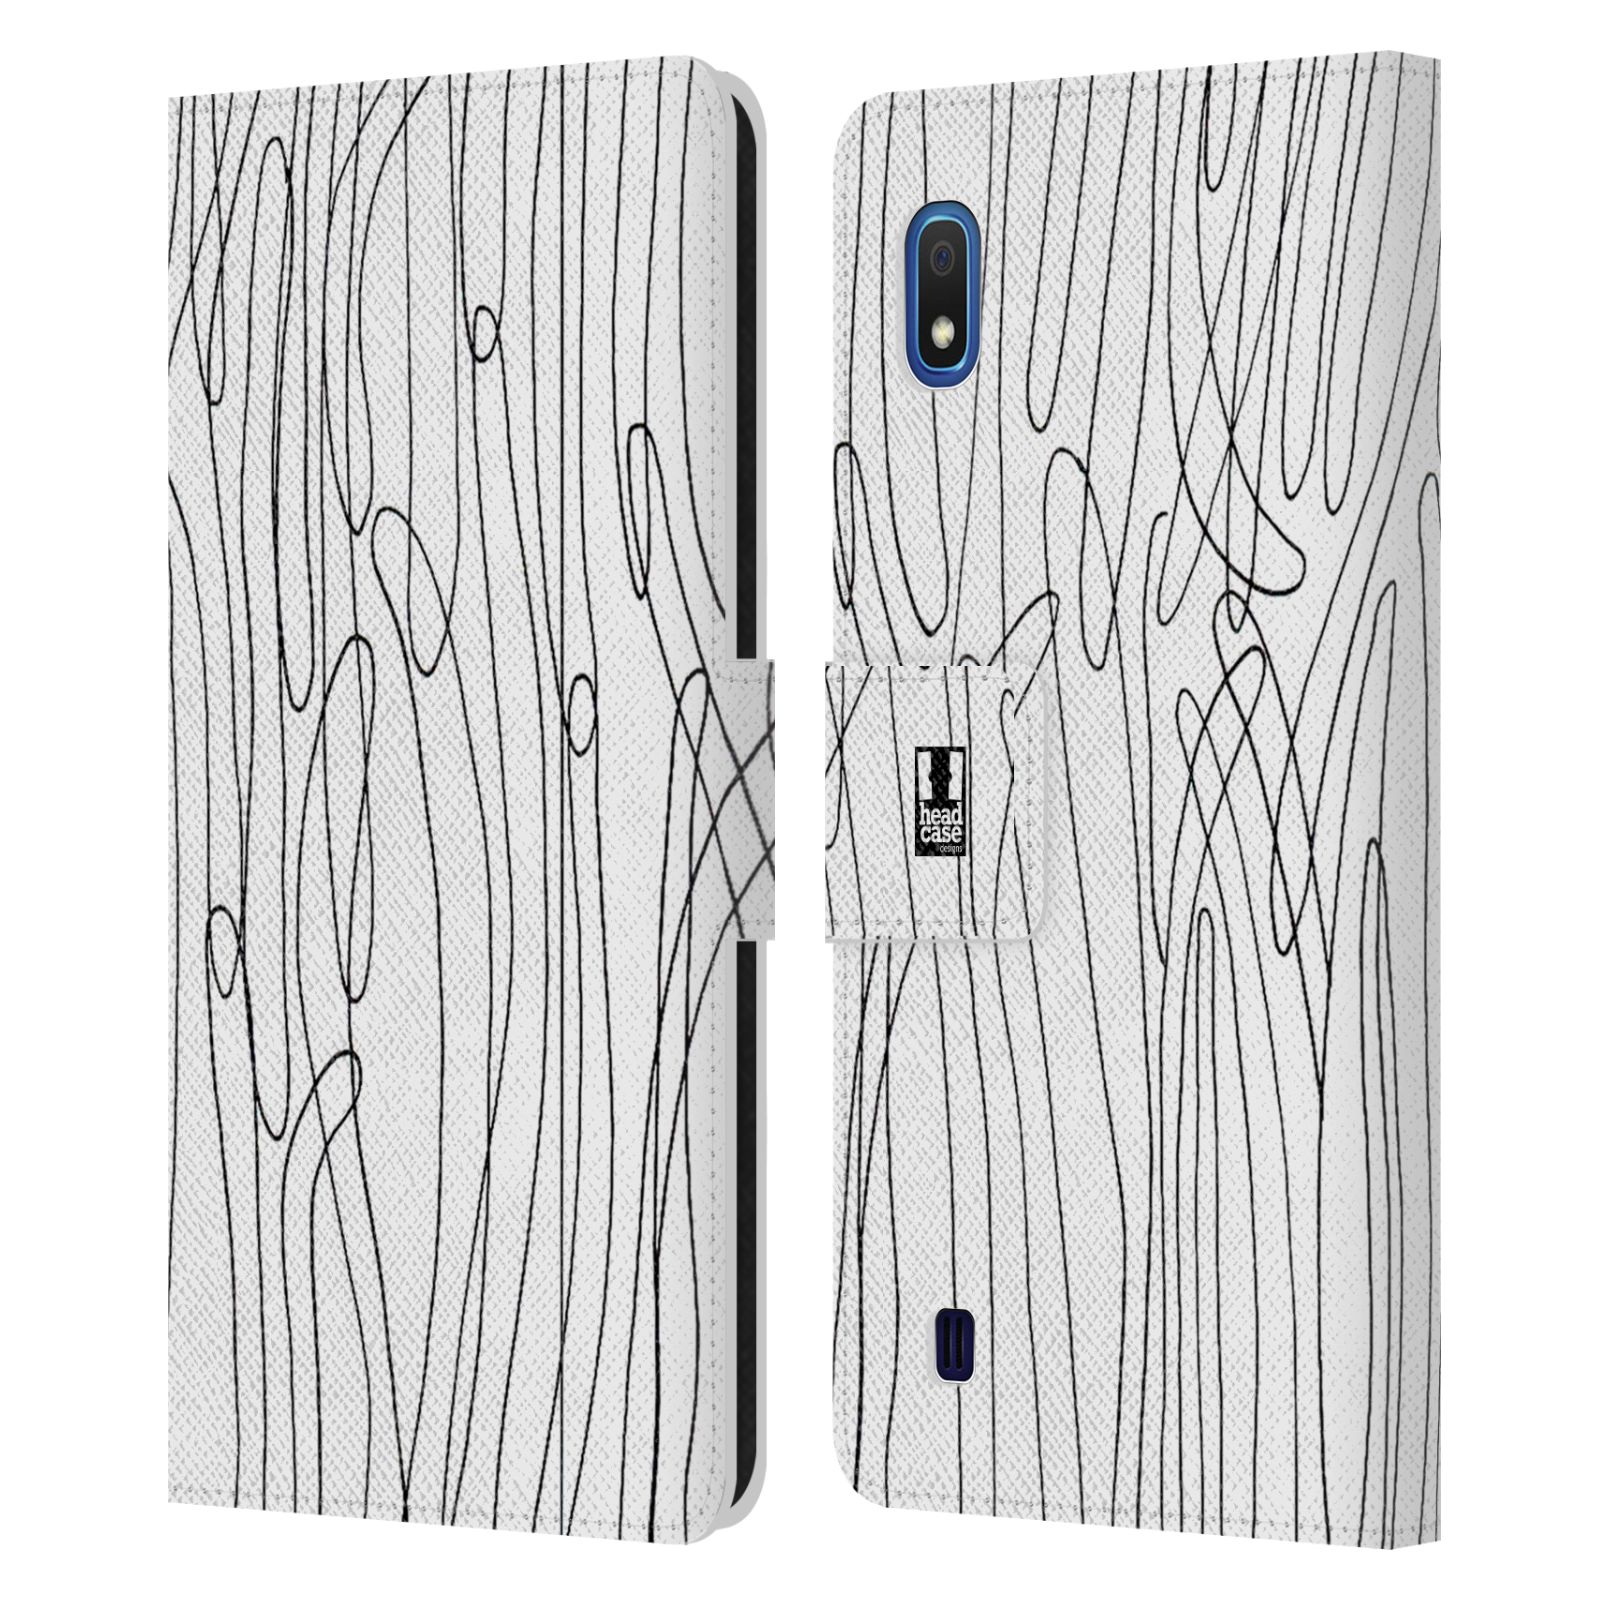 Pouzdro na mobil Samsung Galaxy A10 kresba a čmáranice vlny černá a bílá